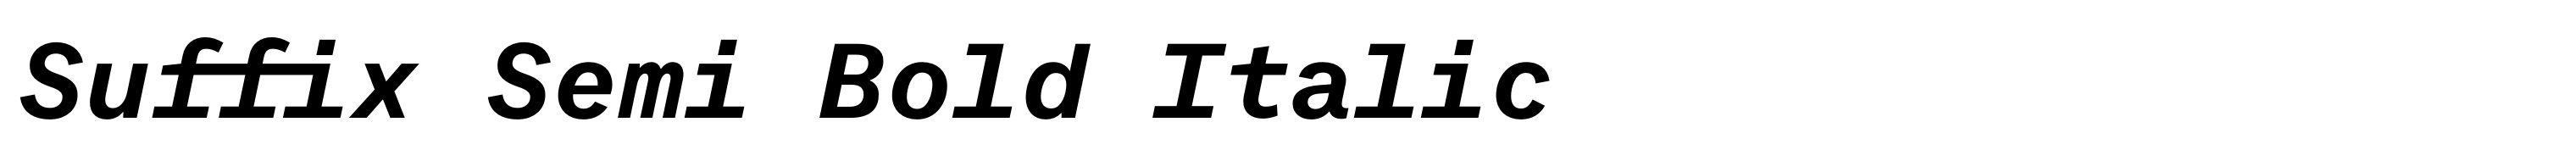 Suffix Semi Bold Italic